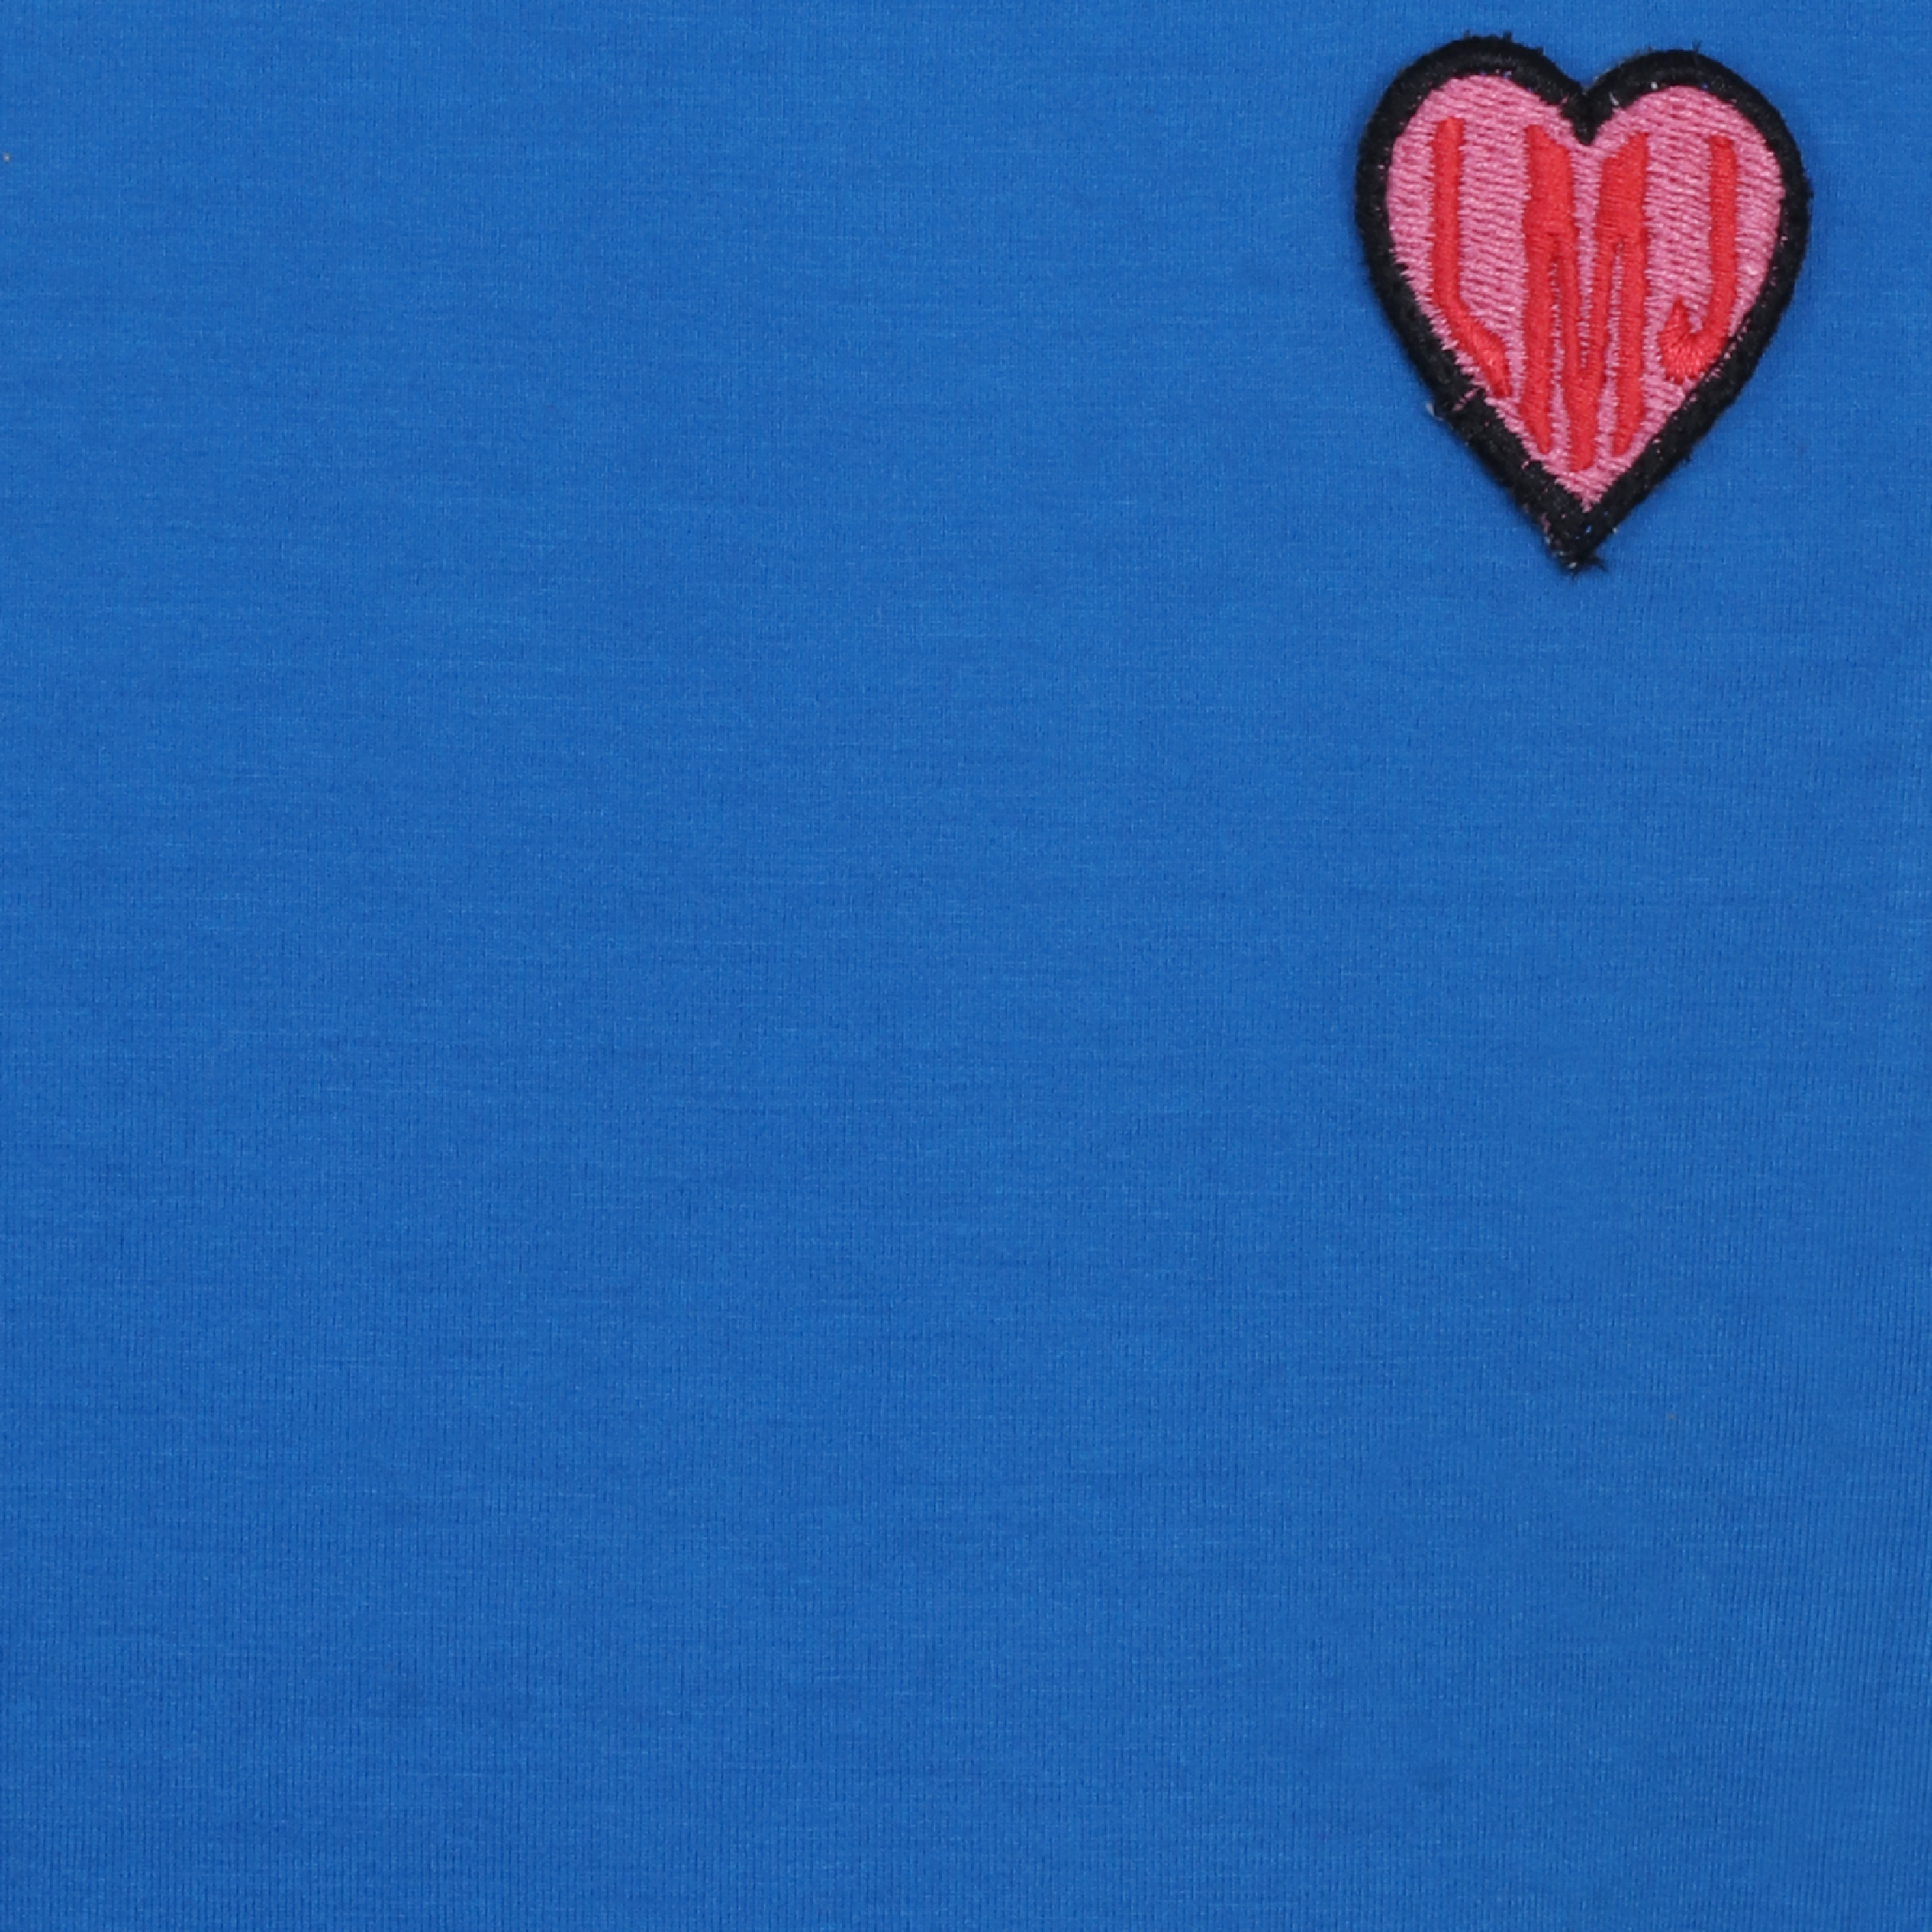 Meisjes Shirt Ruffle van Miss Juliette in de kleur Blauw in maat 146, 152.